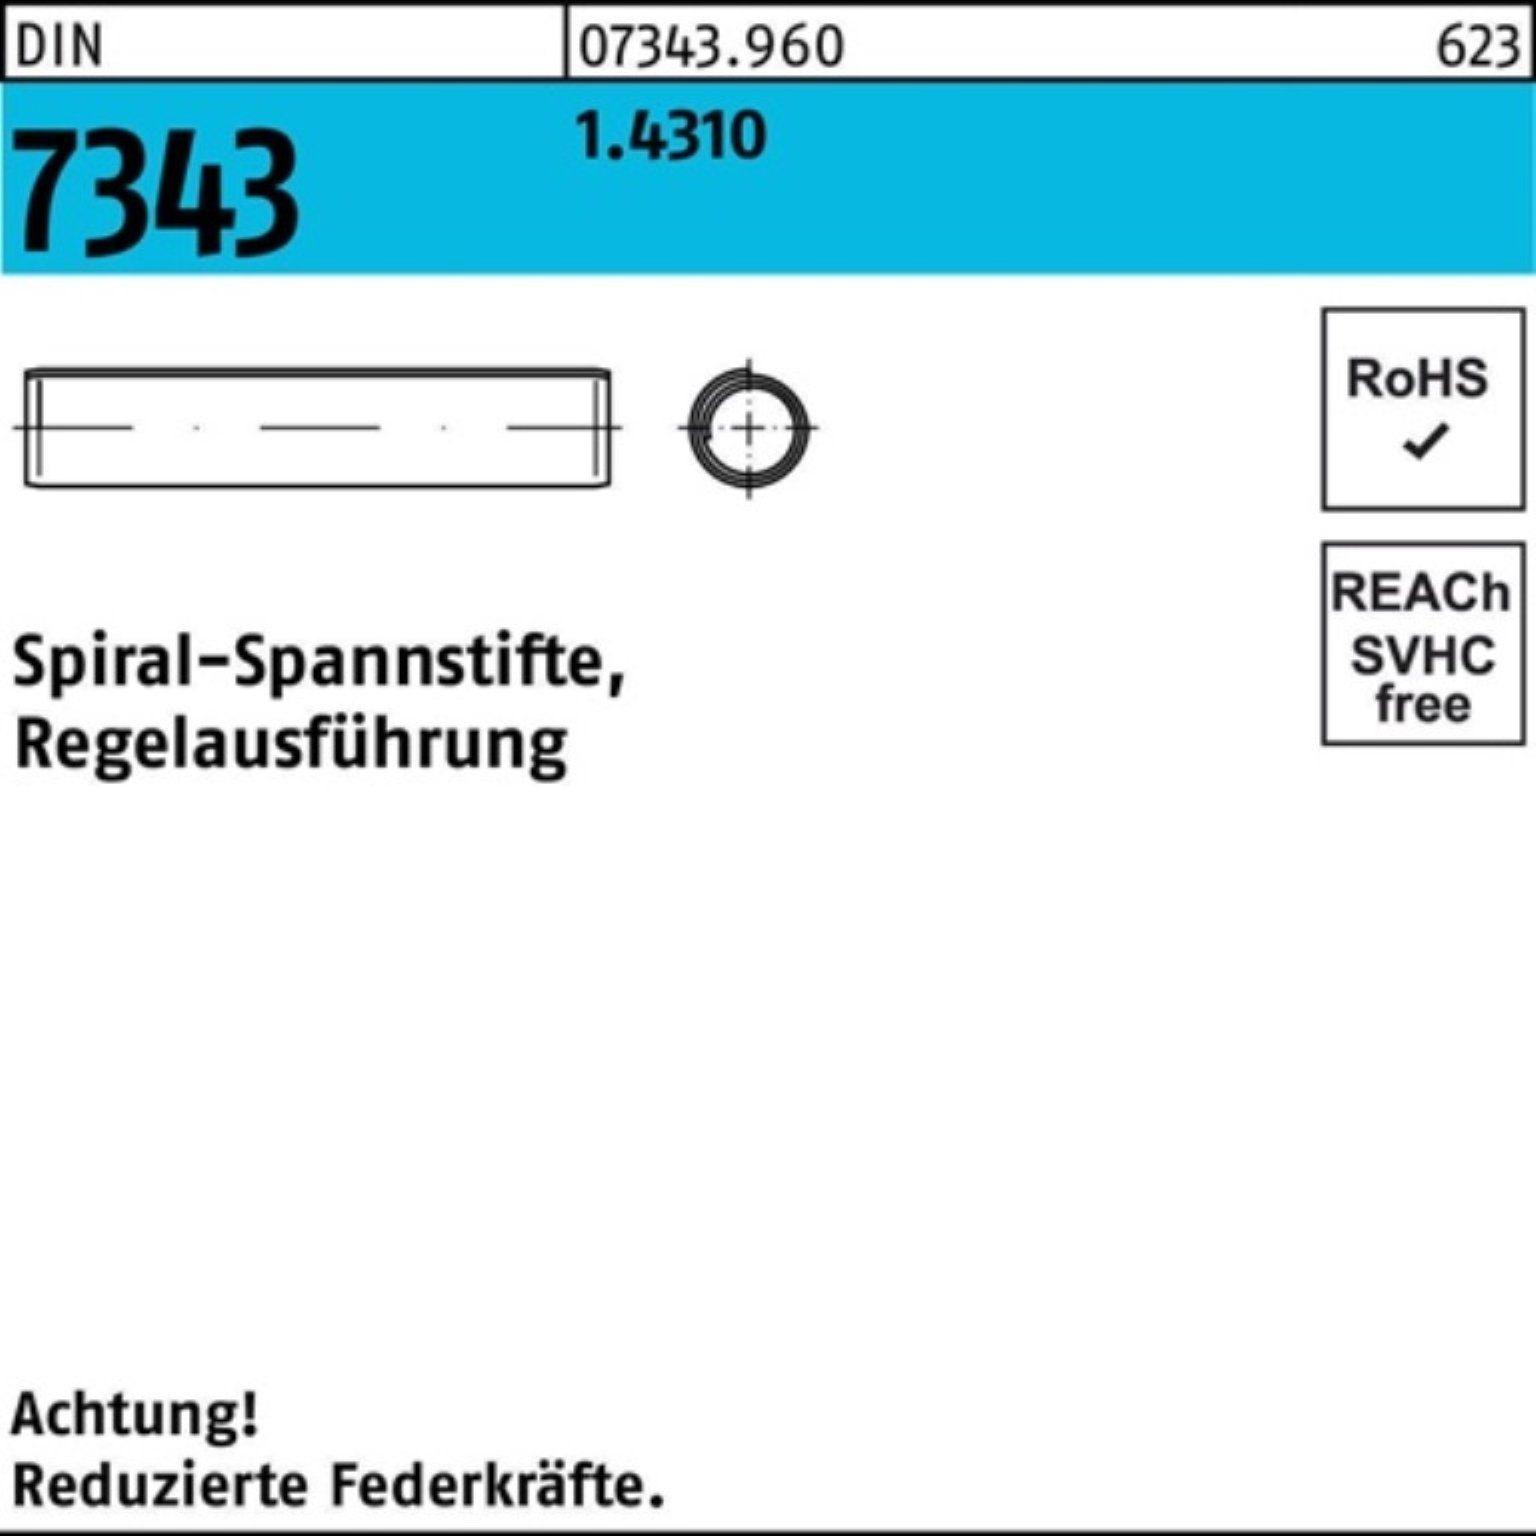 Reyher Spannstift 1000er Pack Spiralspannstift DIN 7343/ISO 8750 1,5x 8 1.4310 Regelausf